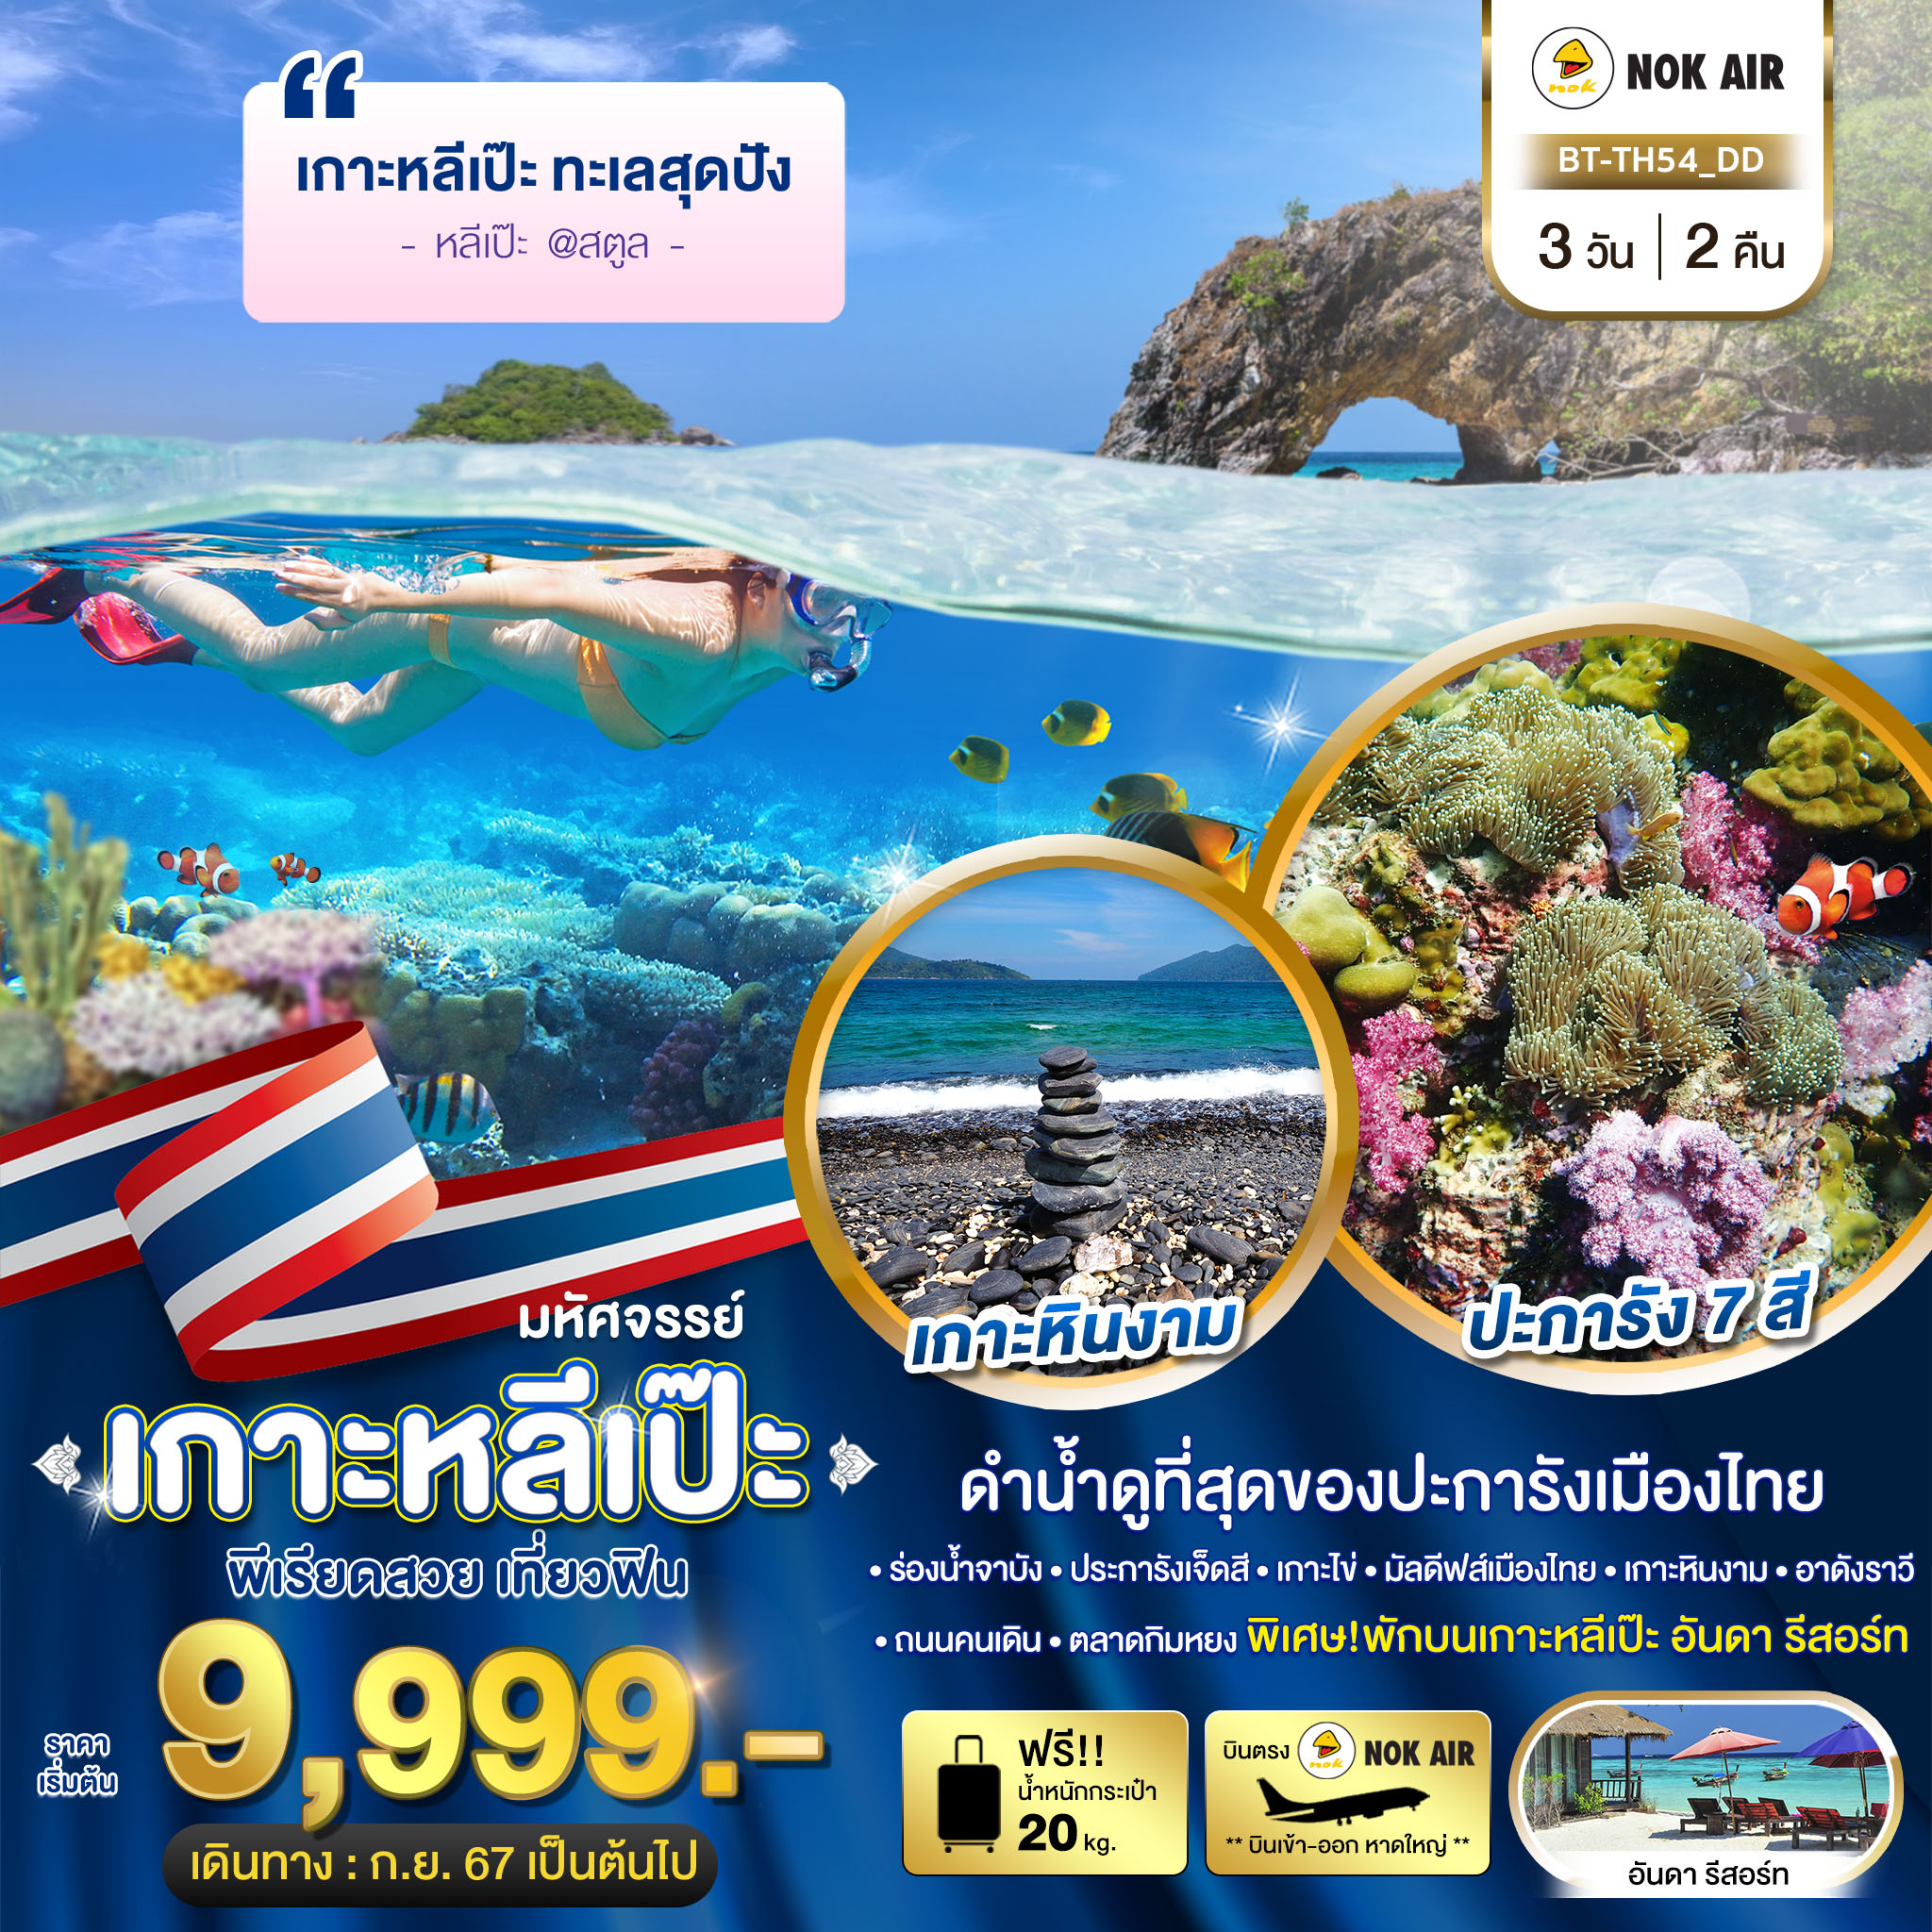 ทัวร์ไทย มหัศจรรย์..เกาะหลีเป๊ะ ทะเลสุดปัง ดำน้ำดูที่สุดของประการังเมืองไทย